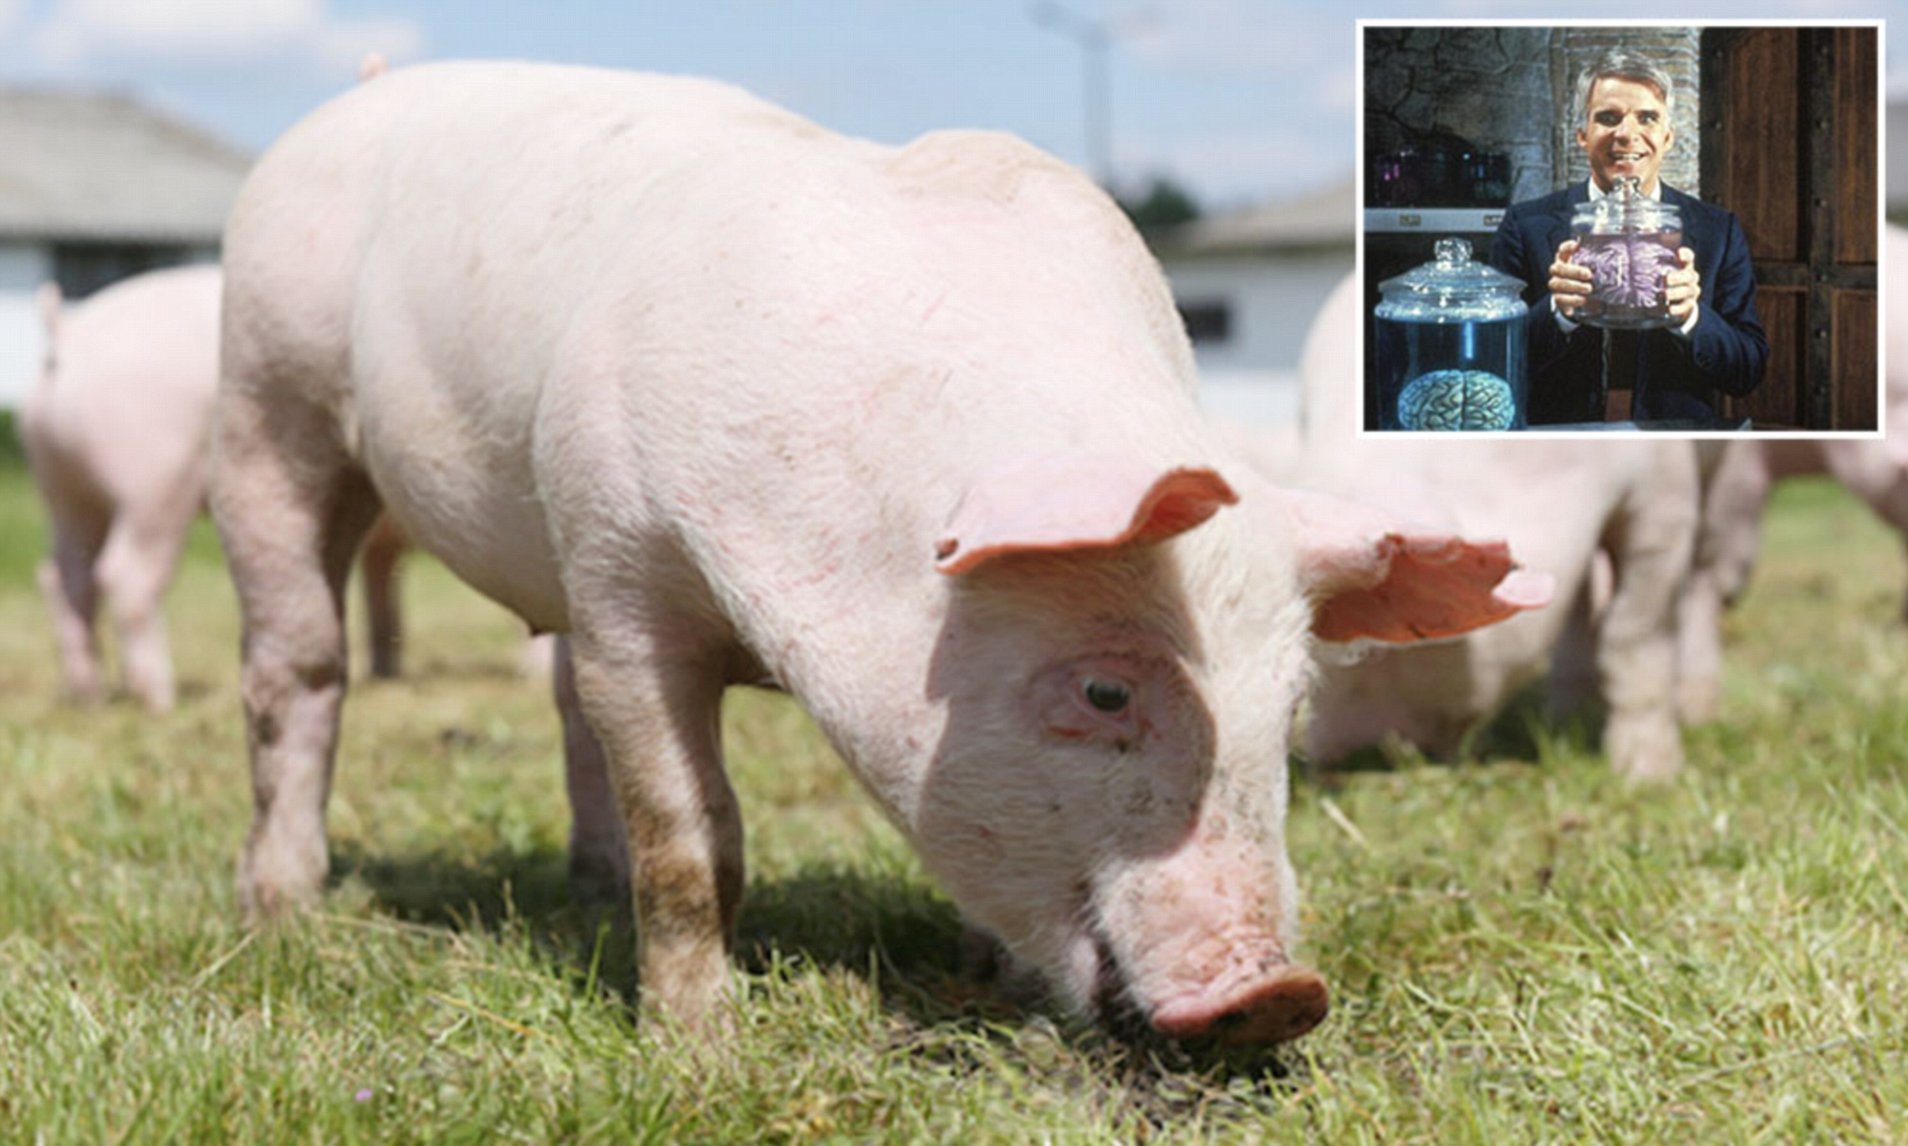 Cruel experimento mantiene cerebros de cerdos vivos FUERA de sus cuerpos para buscar la inmortalidad humana